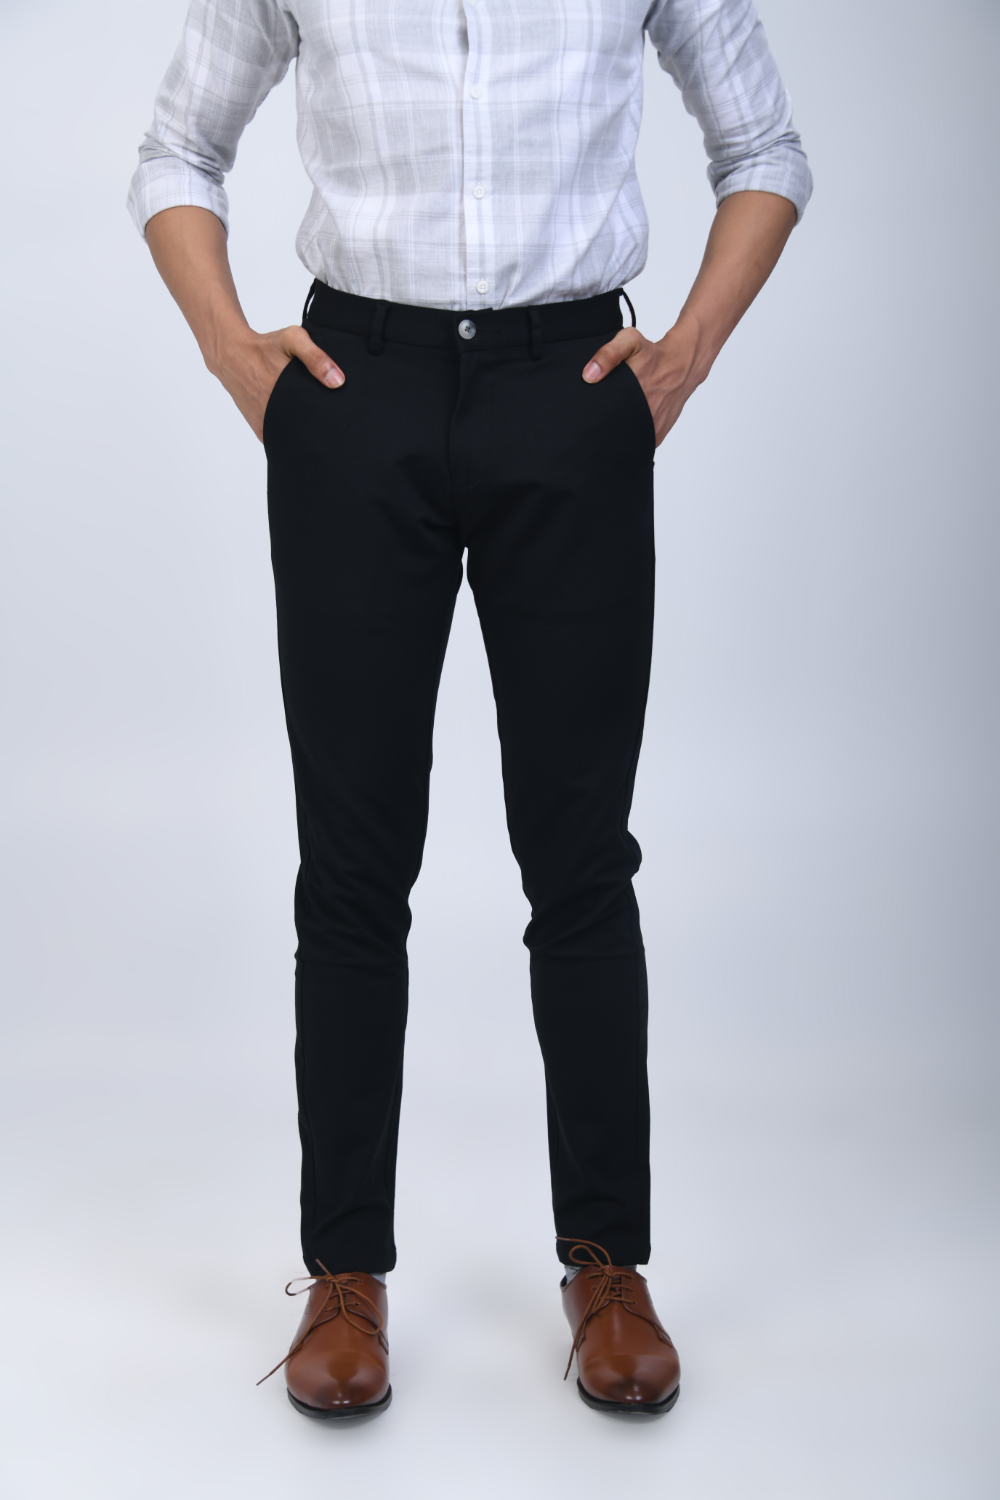 Medium Grey Self Design Full Length Formal Men Slim Fit Trousers - Selling  Fast at Pantaloons.com